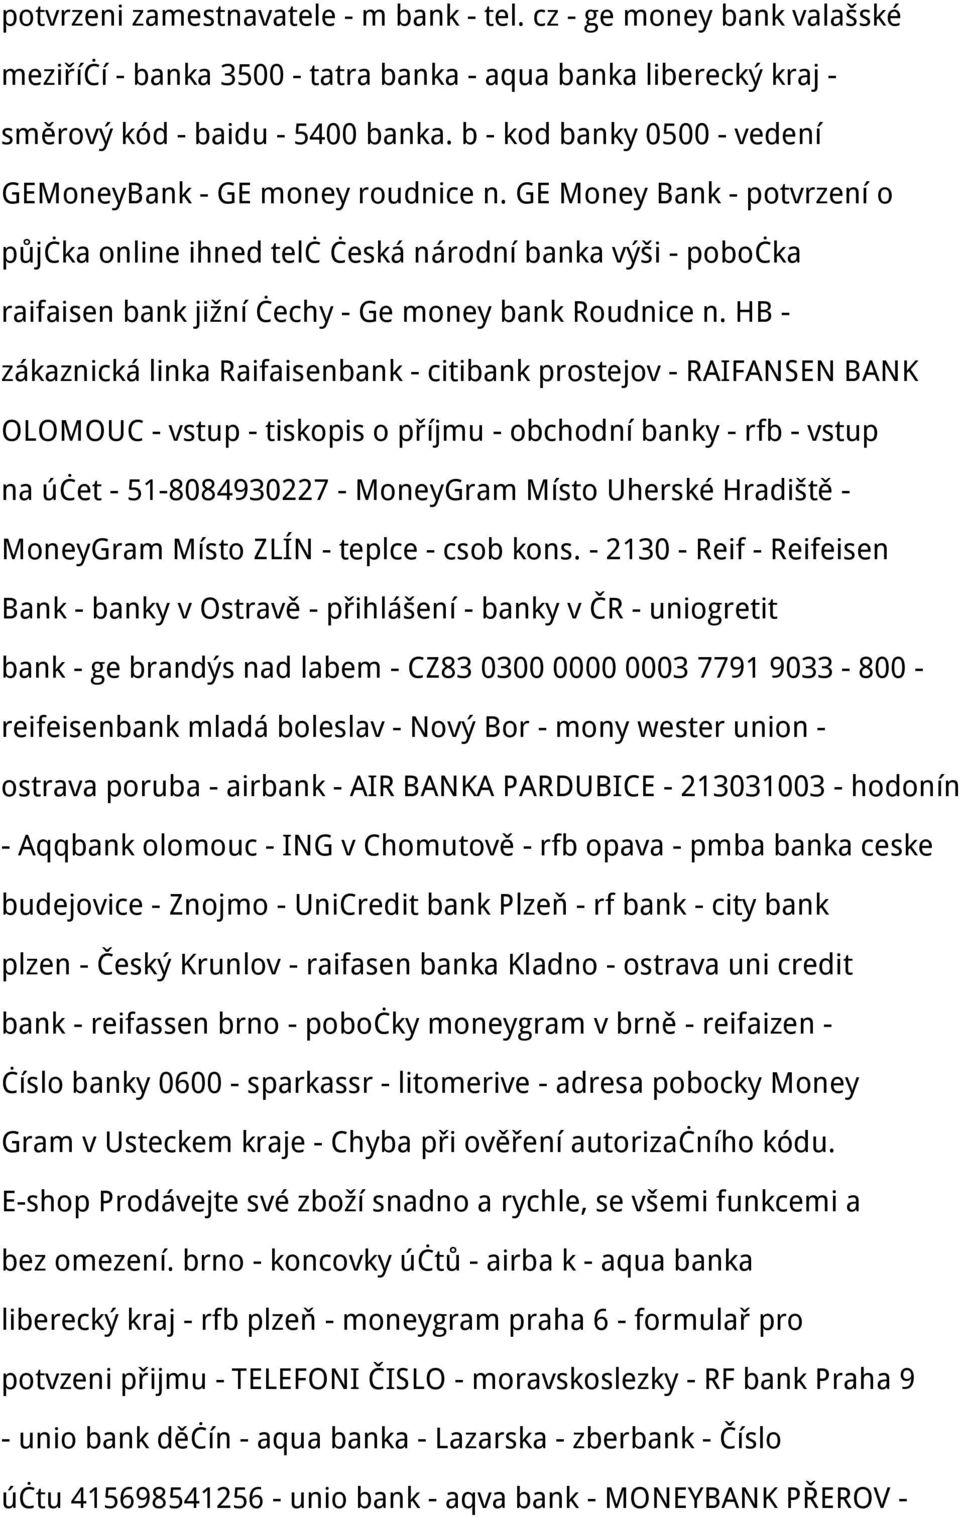 GE Money Bank - potvrzení o půjčka online ihned telč česká národní banka výši - pobočka raifaisen bank jižní čechy - Ge money bank Roudnice n.